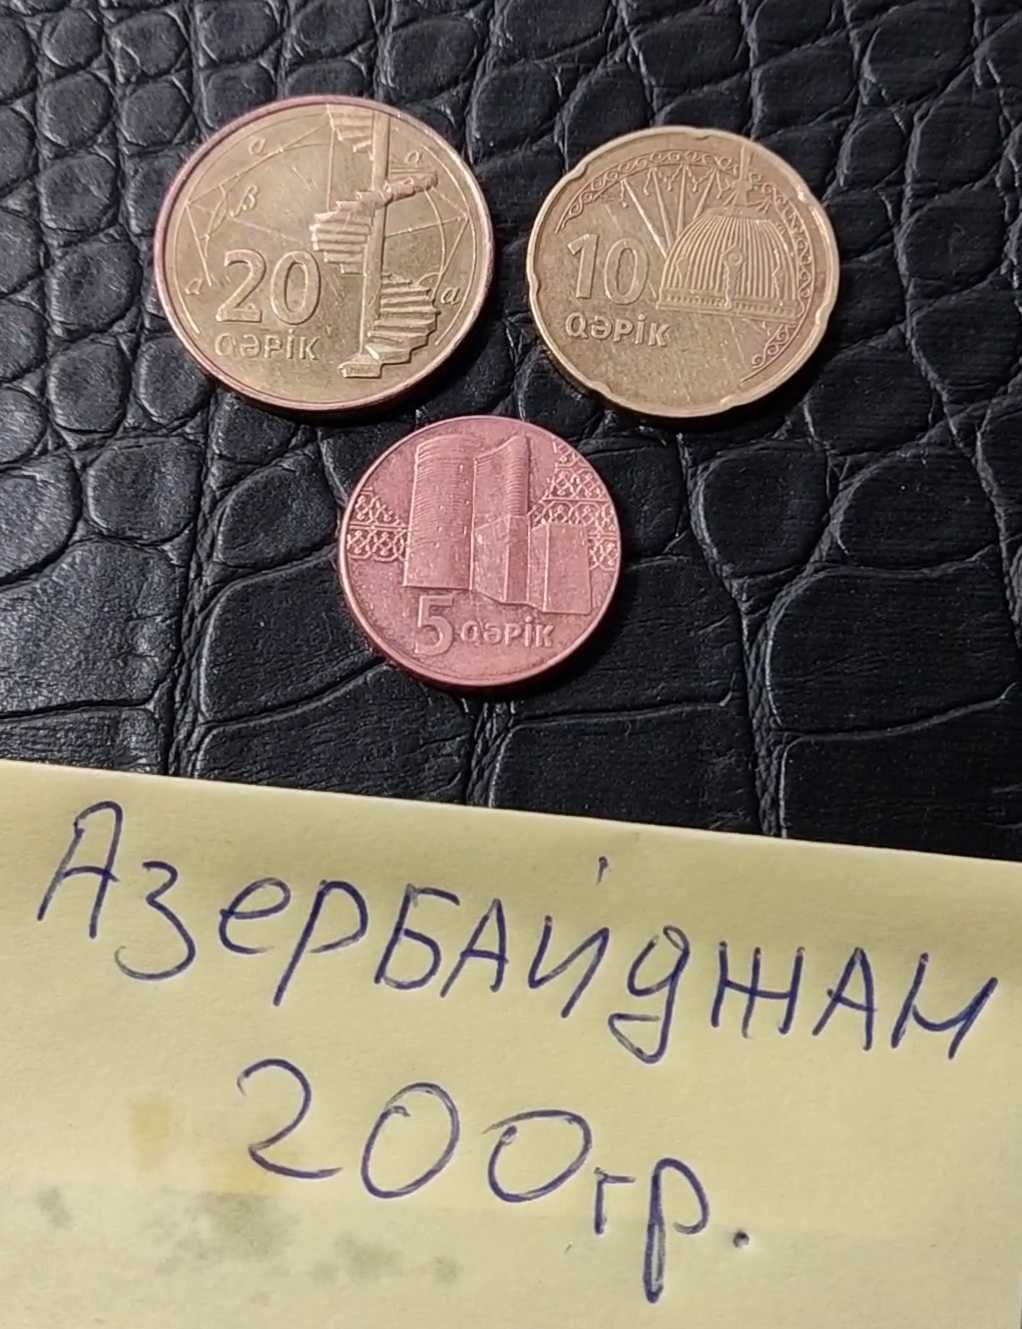 Монеты Азербайджан,есть много стран, пишите спрашивайте.